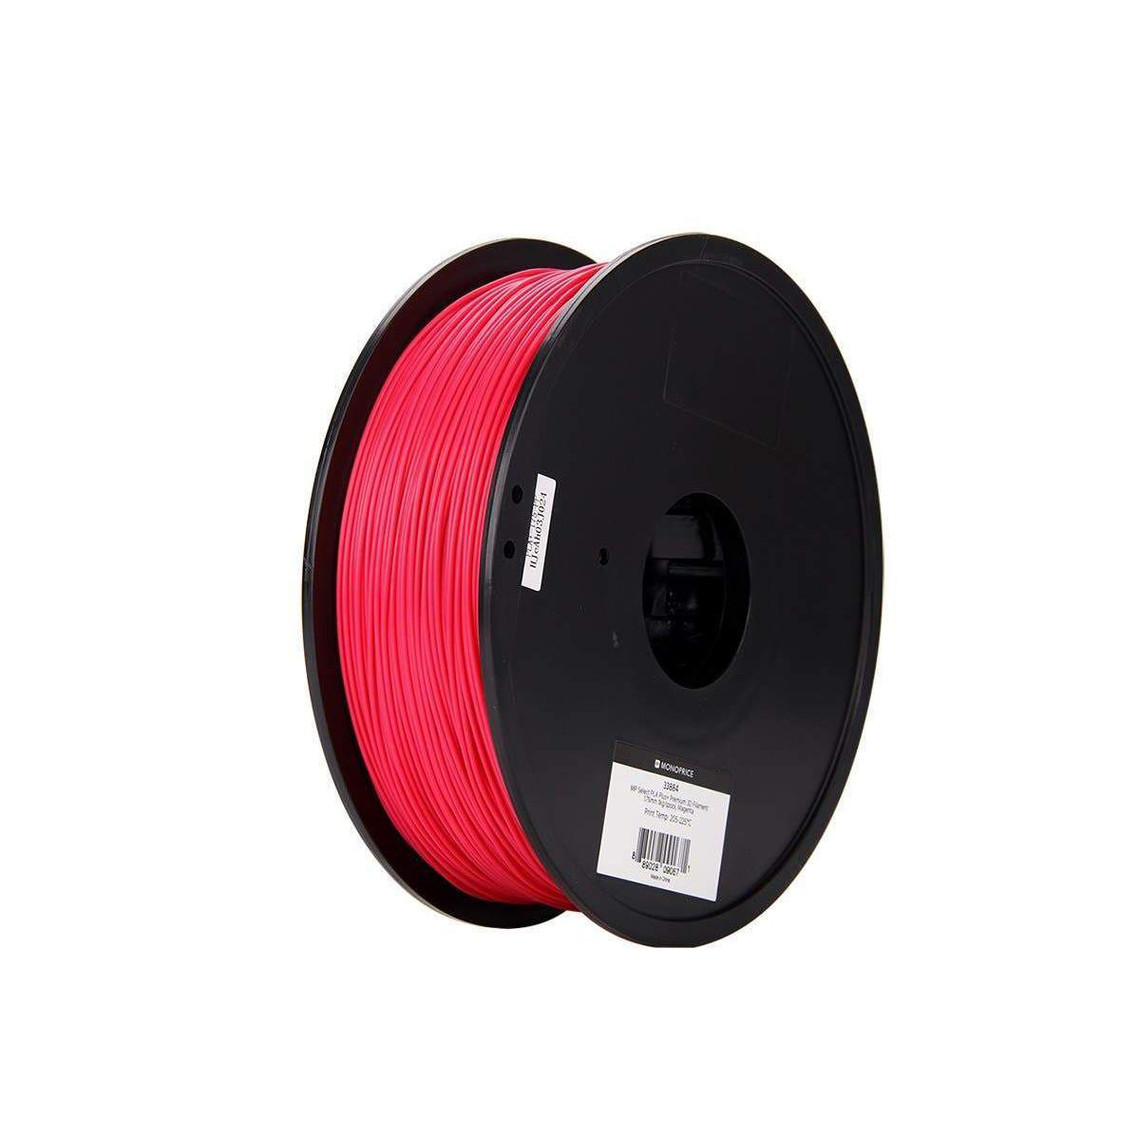 Monoprice Select PLA Plus+ Premium 3D Filament 1.75mm | 1kg/spool | Biodegradable